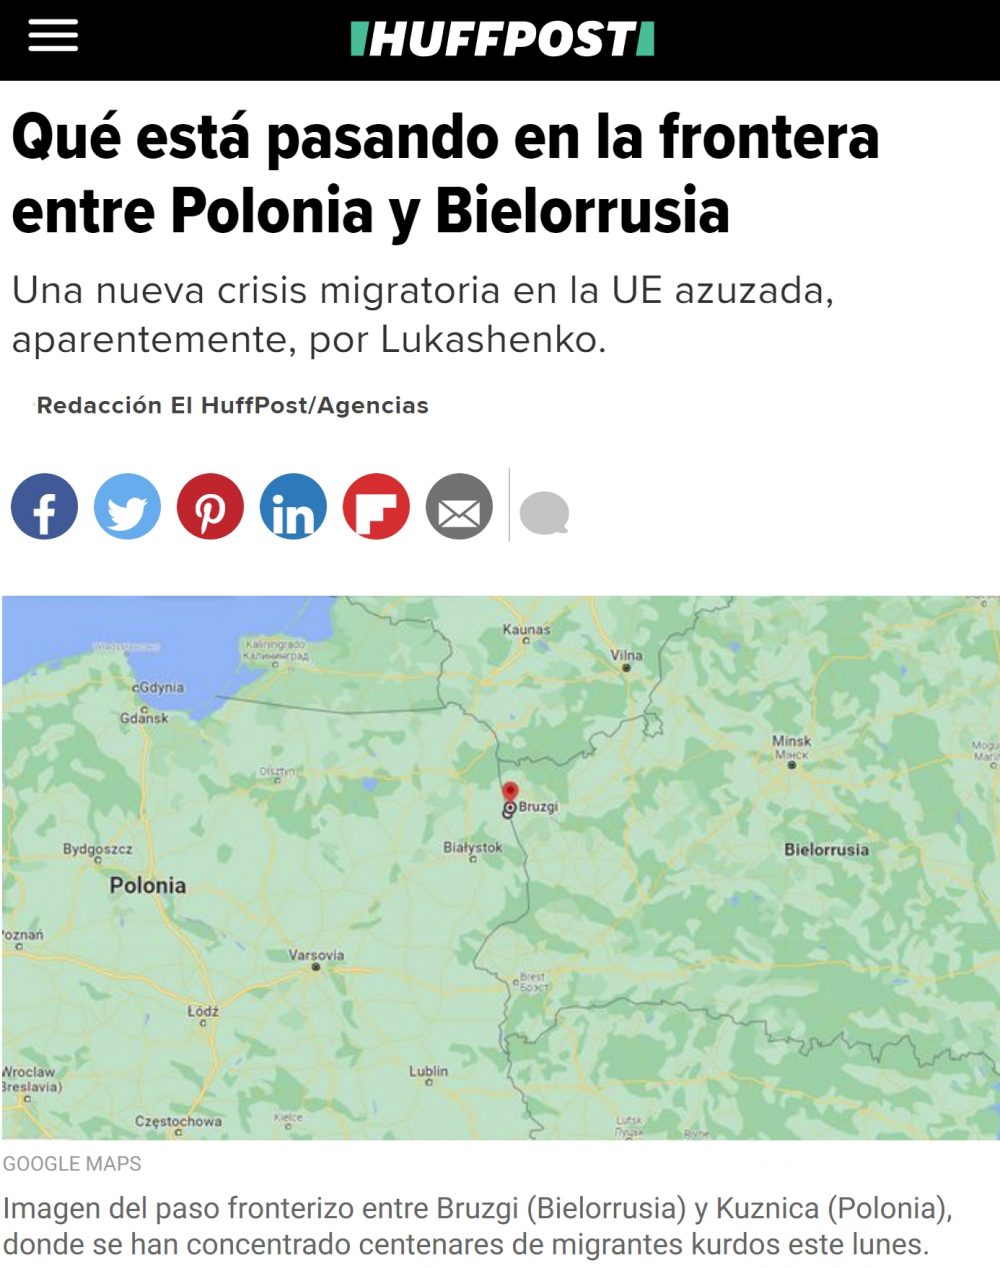 ¿Qué está pasando en la frontera de Bielorrusia con Polonia?